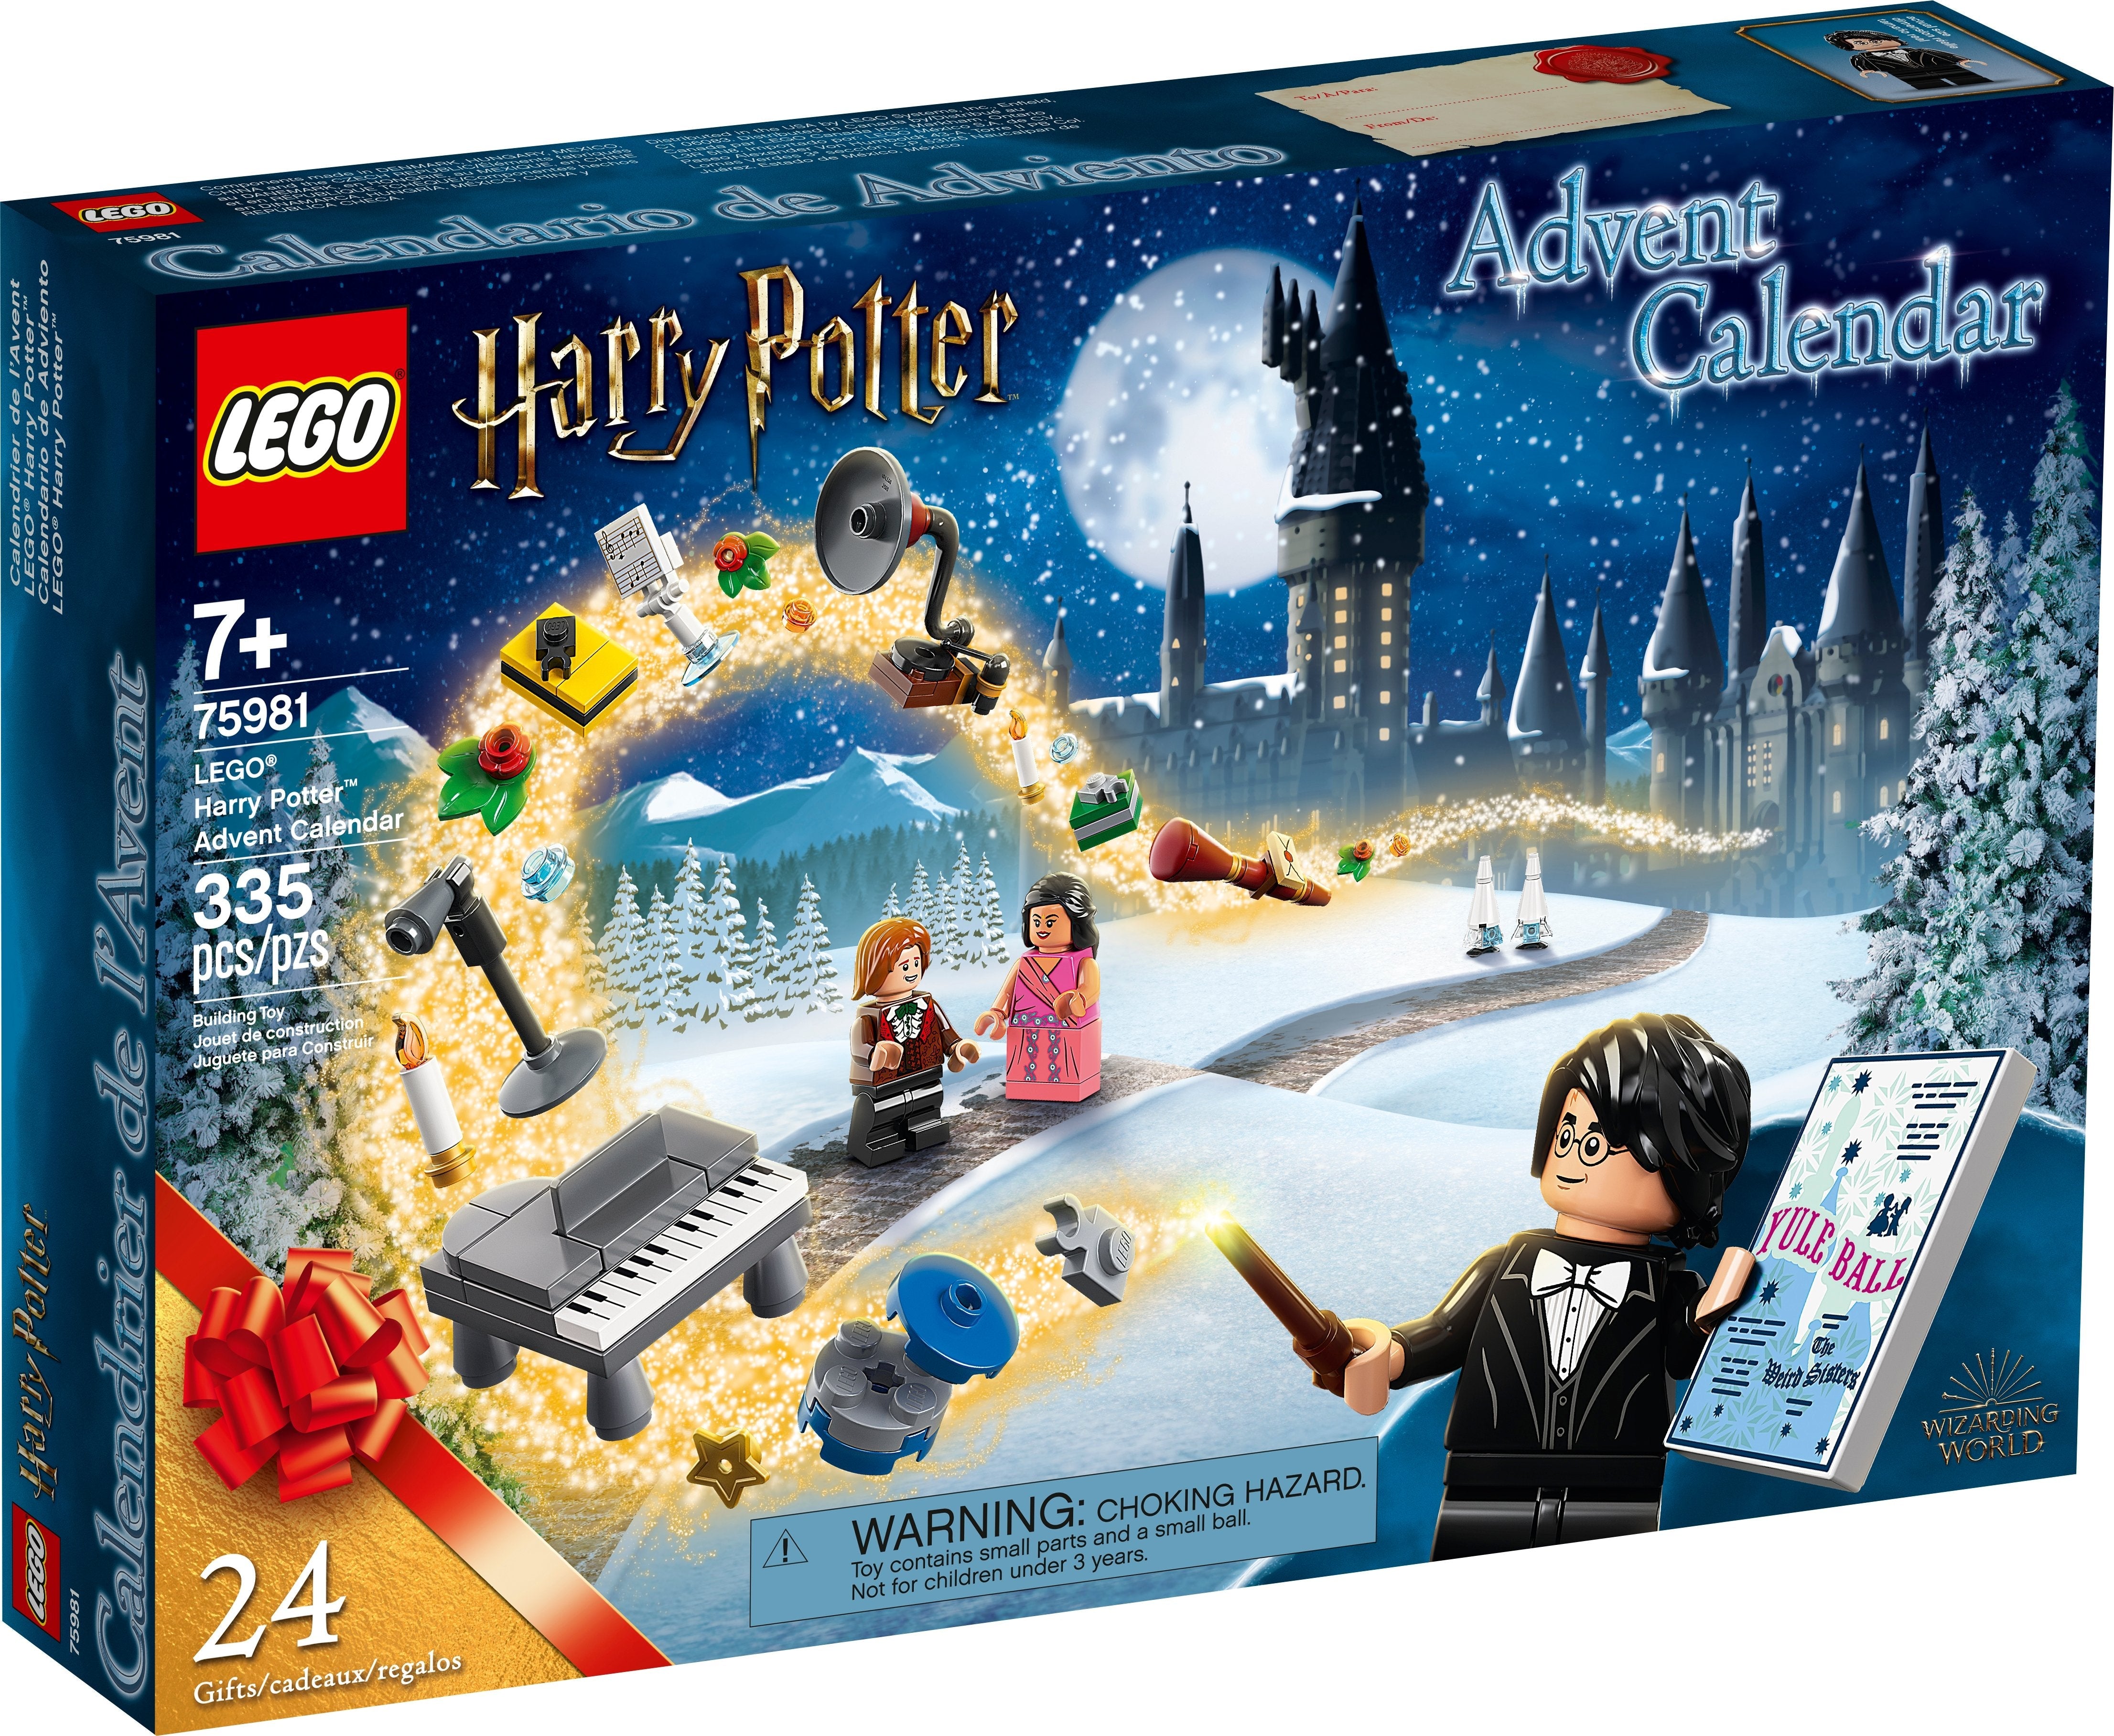 LEGO Harry Potter Adventskalender (75981) - im GOLDSTIEN.SHOP verfügbar mit Gratisversand ab Schweizer Lager! (5702016831276)